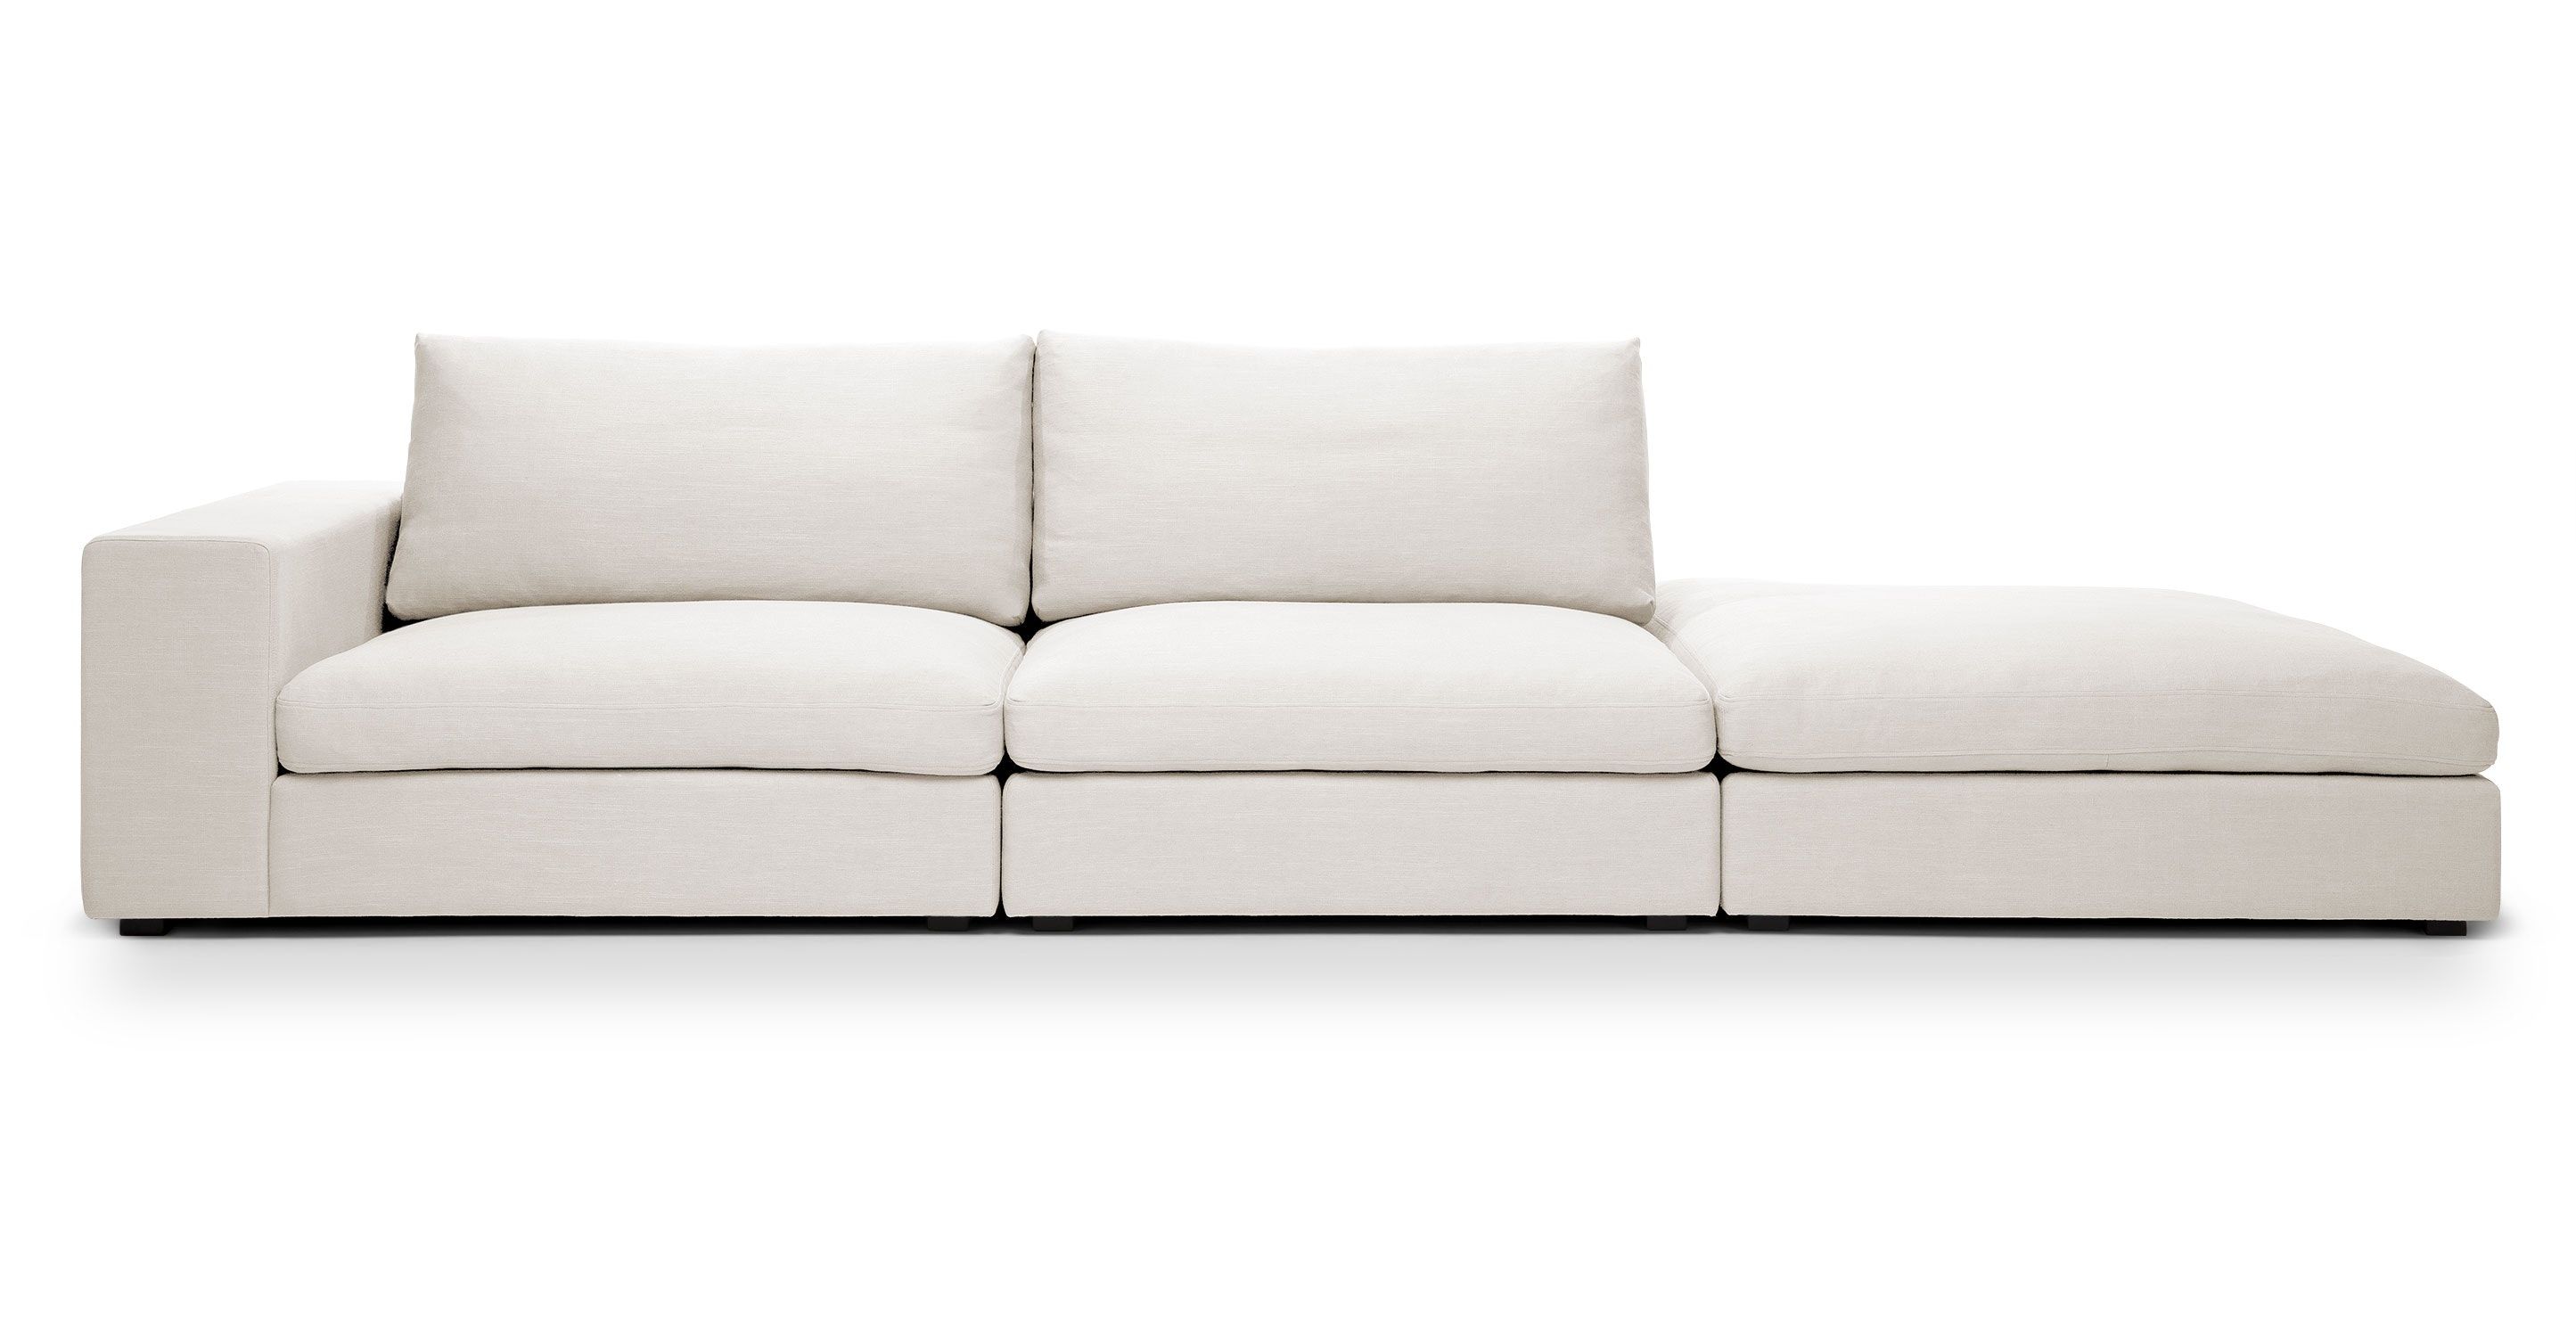 Cube Quartz White Modular Sofa, Left Arm - Sofas - Article ...